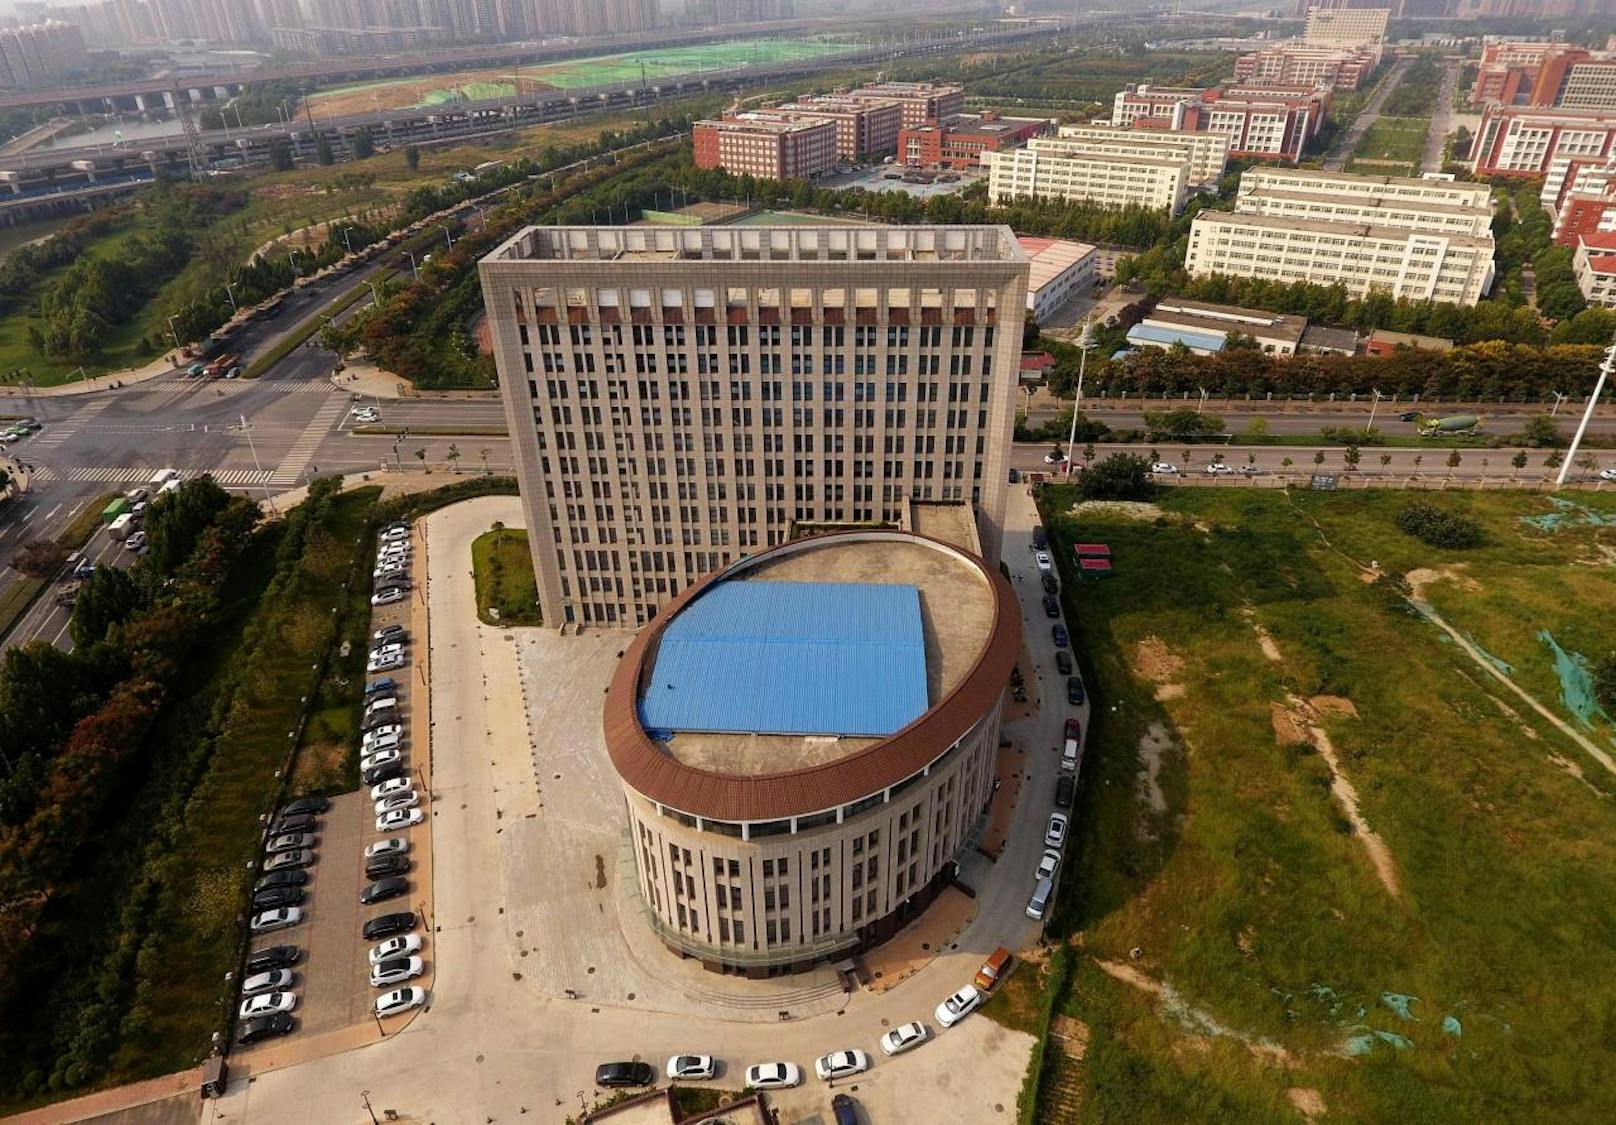 Das Universitätsgebäude in der chinesischen Stadt Zhengzhou hat eine eigenwillige Form. Für viele Social-Media-Nutzer erinnert es frappierend an eine Toilette.